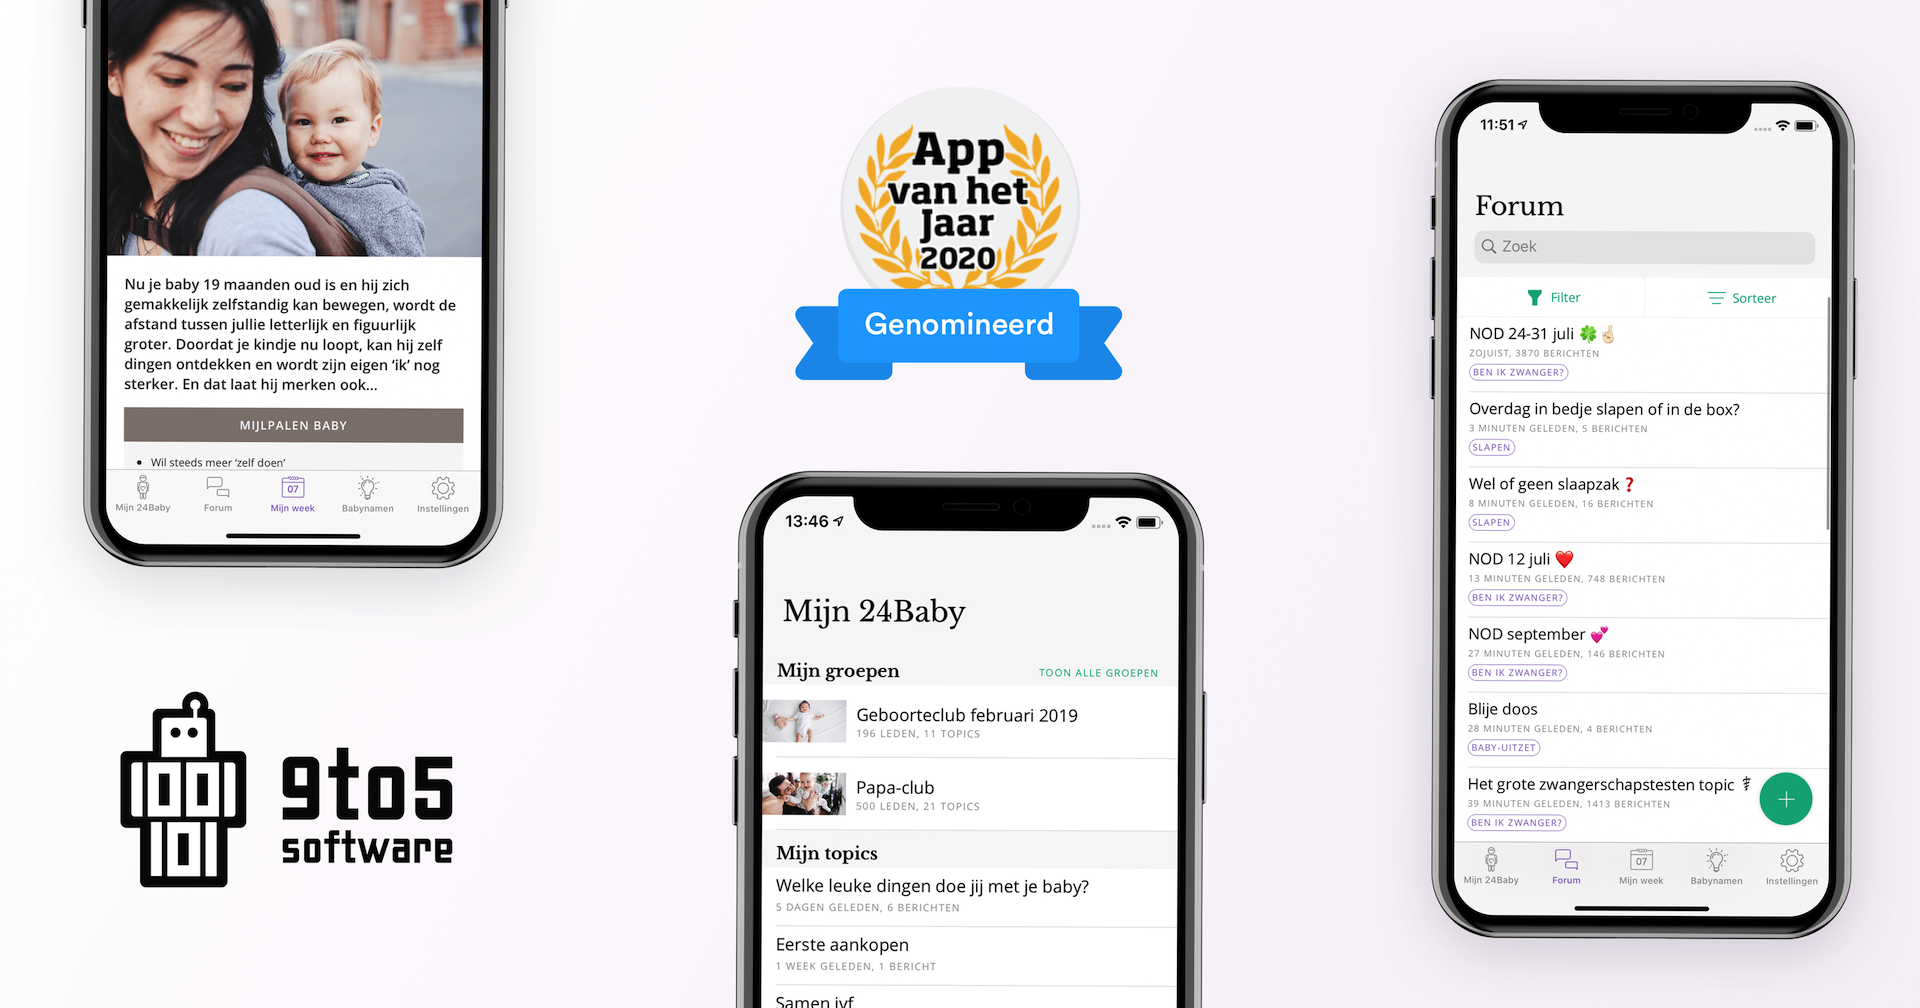 Nominatie voor Beste app van het jaar 2020 voor 24Baby! - Wij zijn trots op de nominatie voor App van het Jaar 2020 voor onze klant 24Baby.